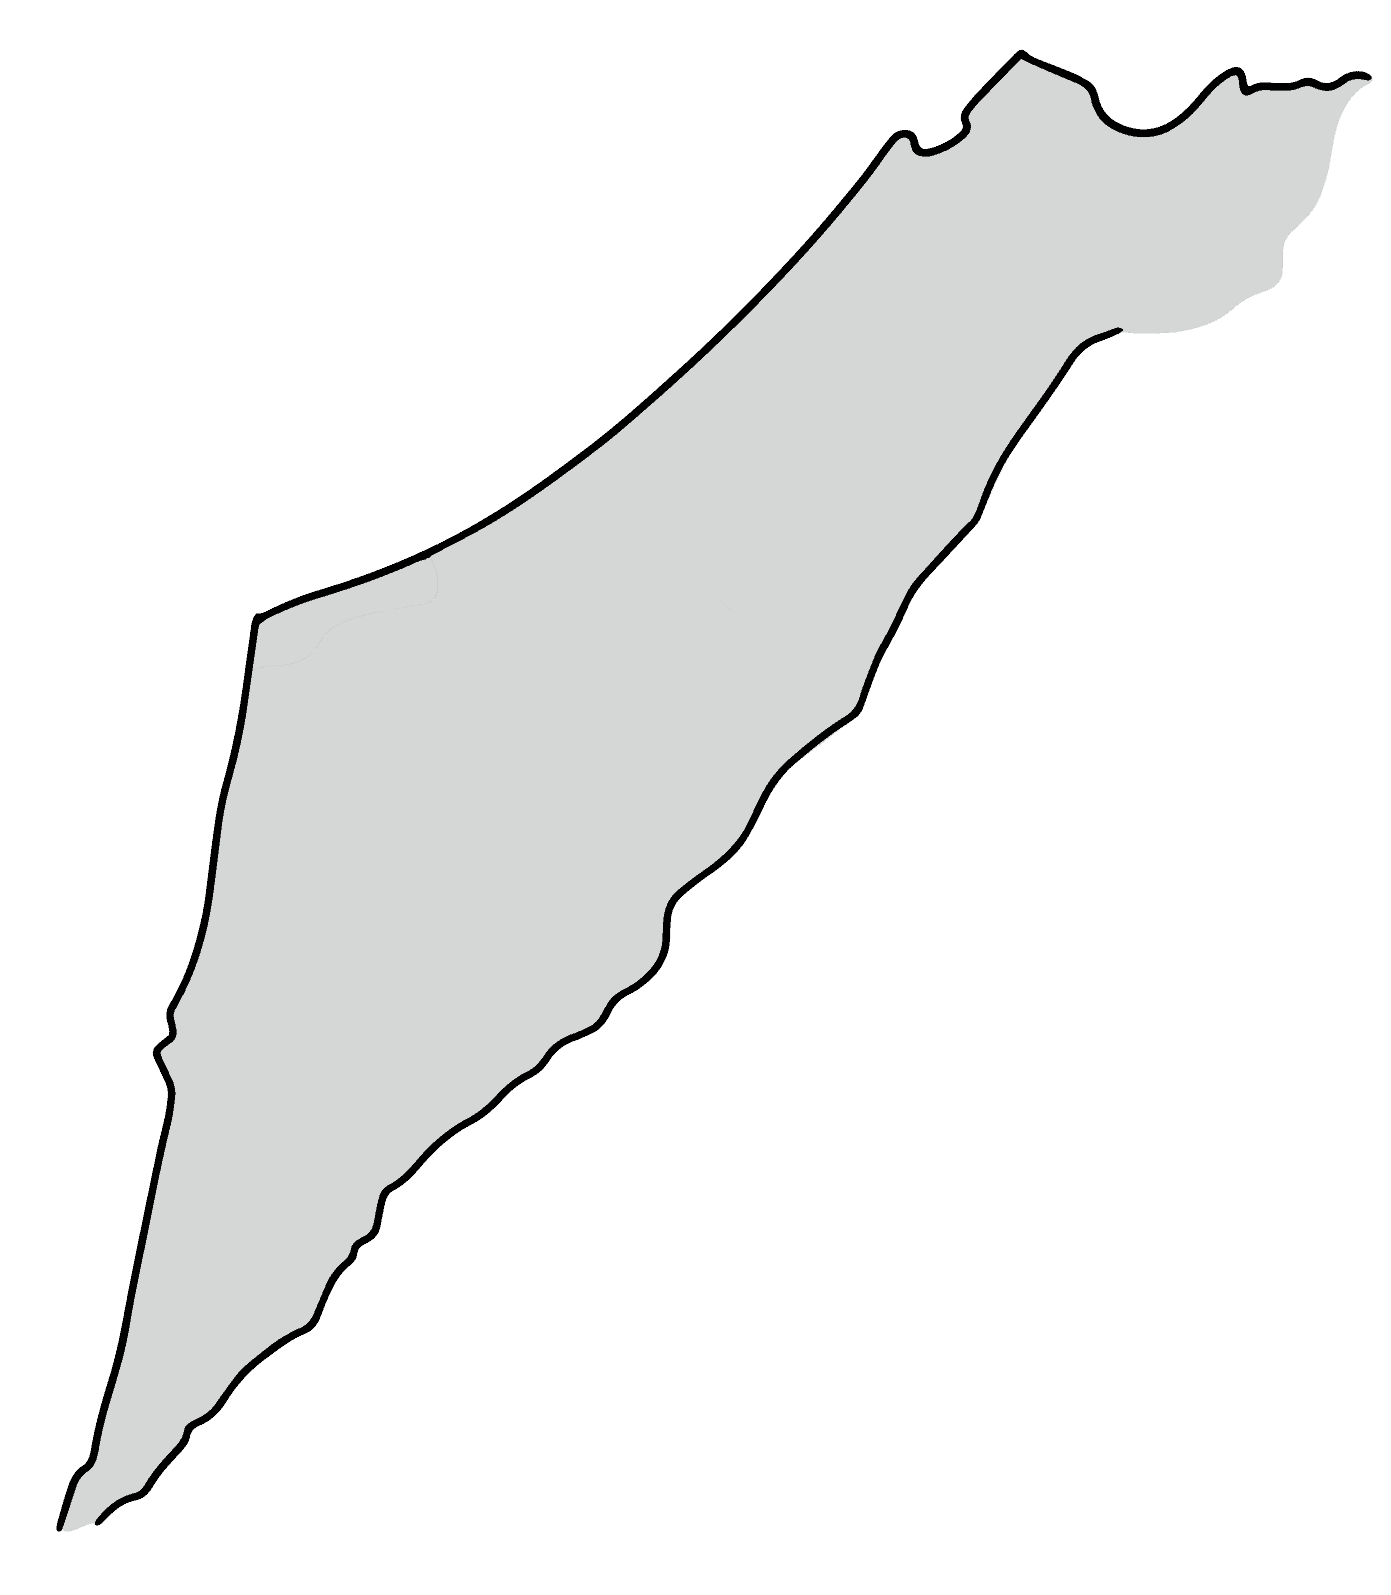 מפת ישראל - רשת ברוקר נדל"ן